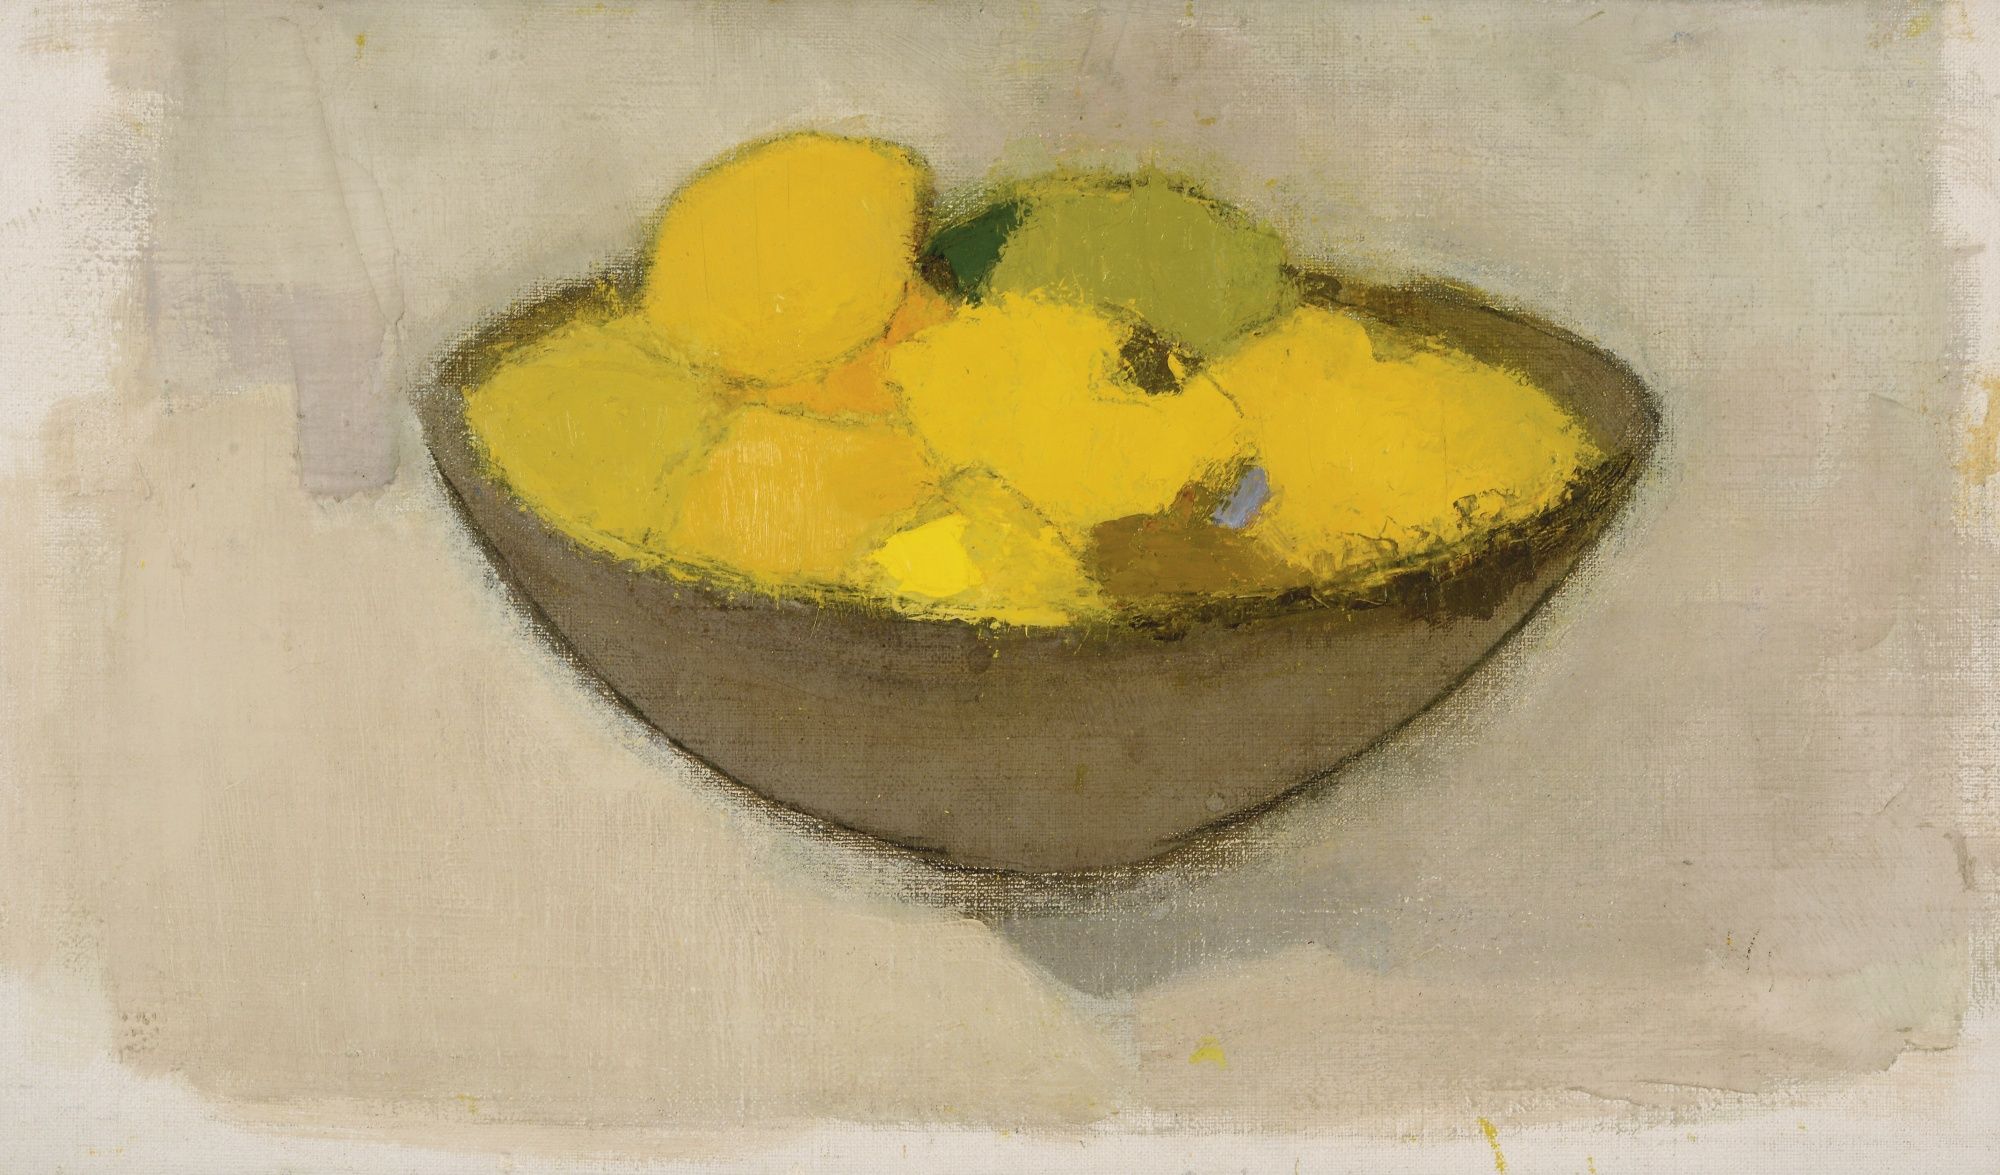 Limones en el cuenco by Helene Schjerfbeck - 1934 - 34,5 x 59,5 cm Colección privada